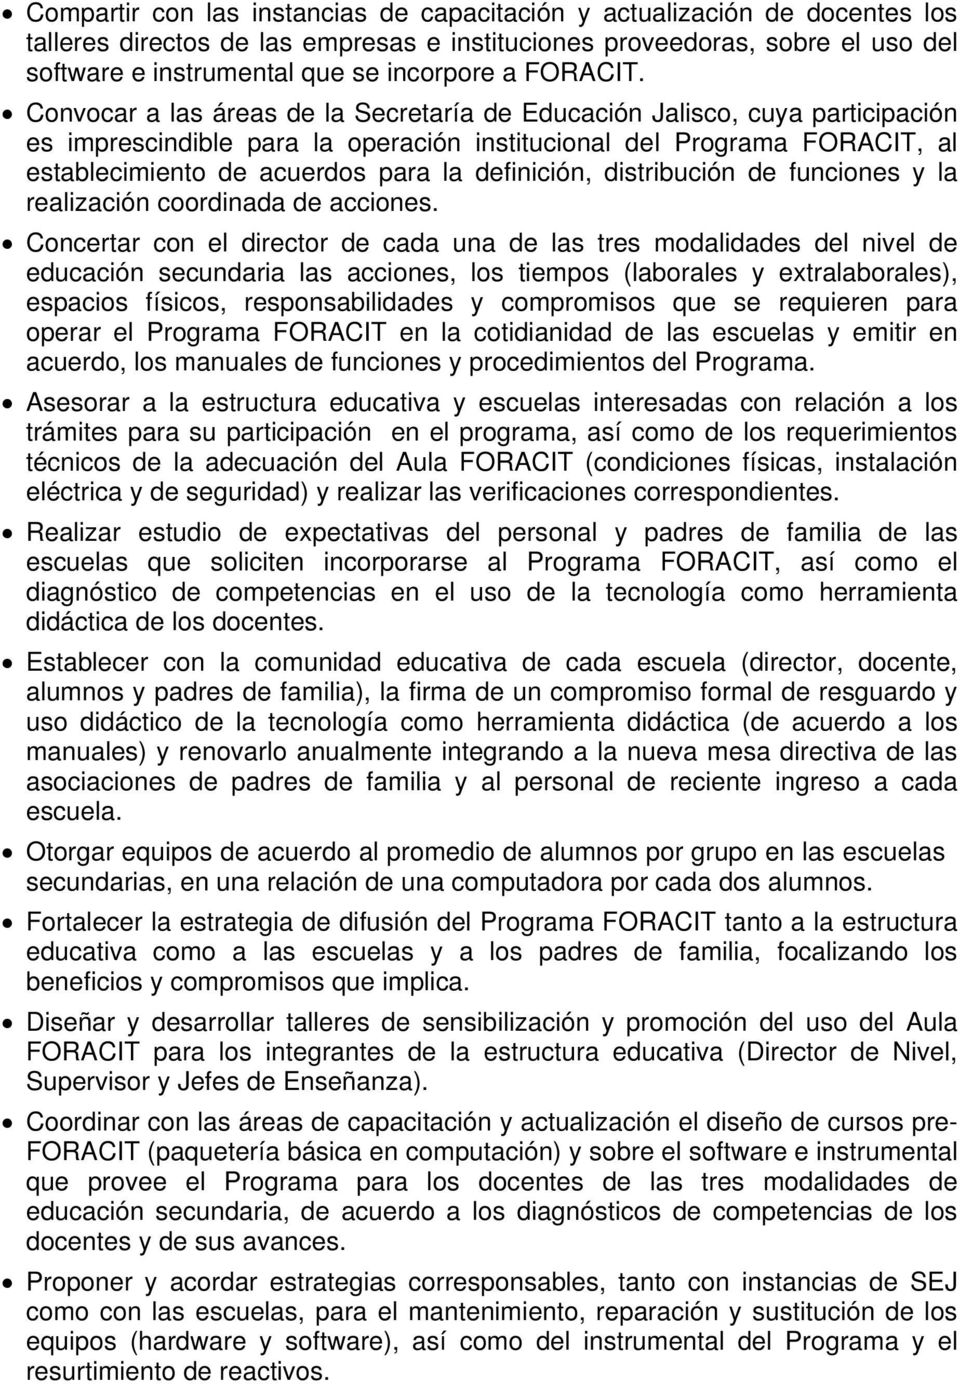 Convocar a las áreas de la Secretaría de Educación Jalisco, cuya participación es imprescindible para la operación institucional del Programa FORACIT, al establecimiento de acuerdos para la